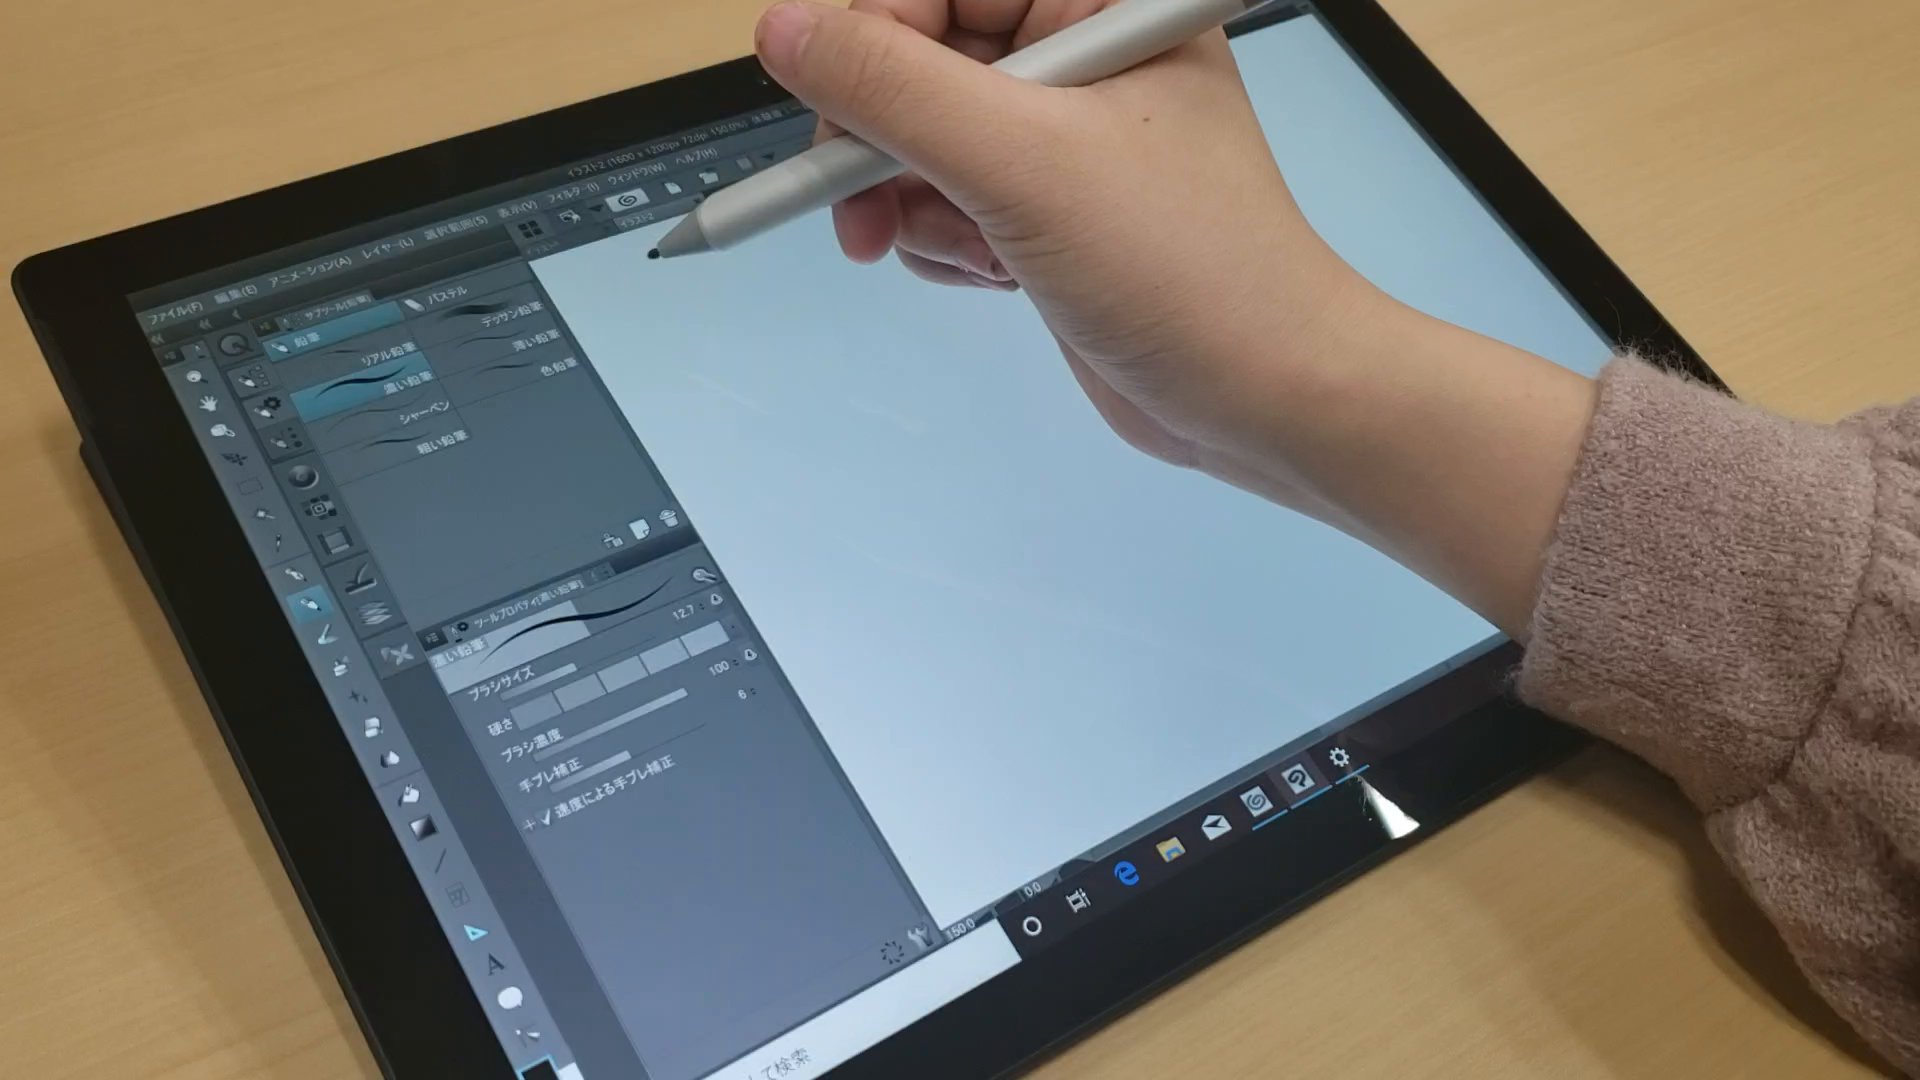 Surface Japan Surfacepro7 クリスタ で試し描き 描くスピードや筆圧を変えるとどうなるか試してみました 素早く描いても遅延は気にならず 力の強弱もしっかり線の太さに反映されました 描き心地も滑らか 他にも試してほしいことがあれば